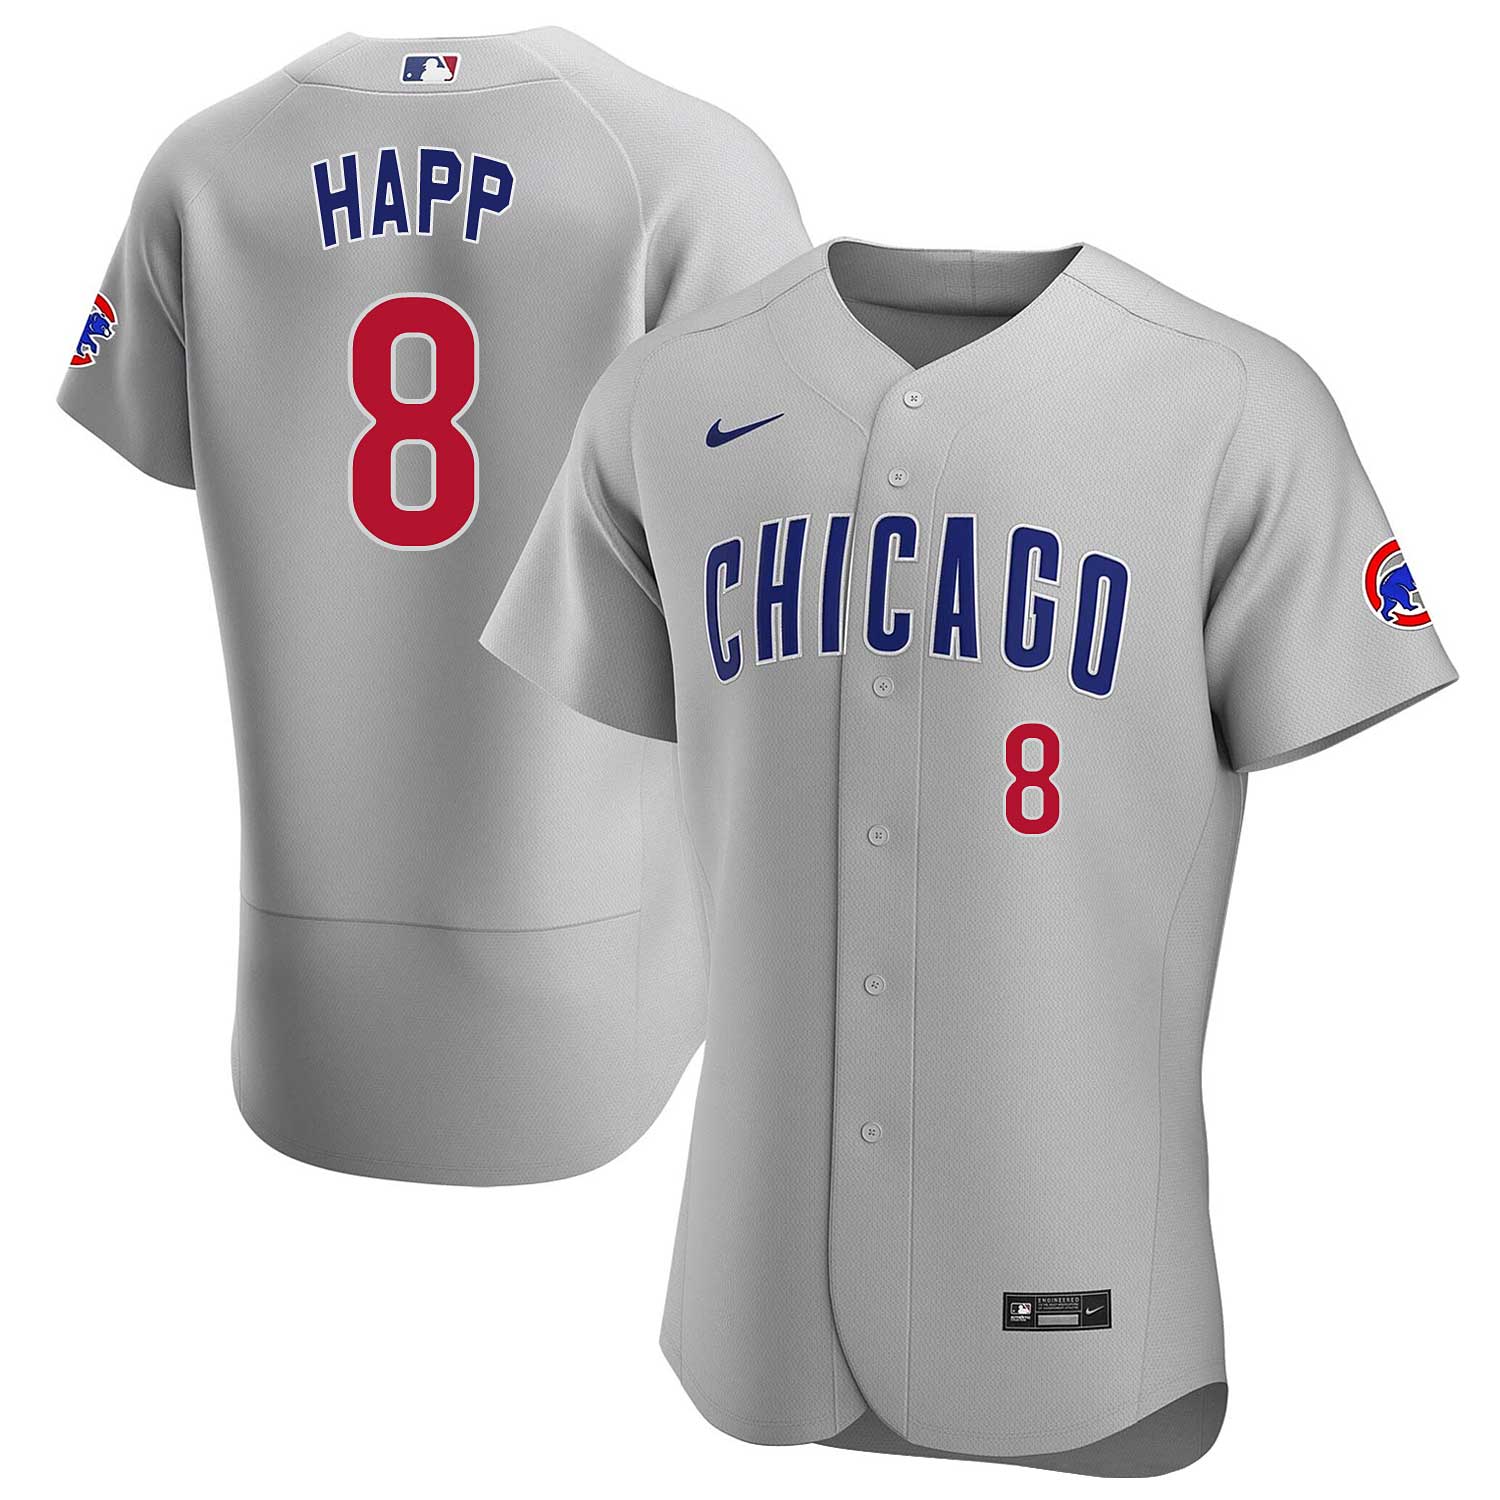 Chicago Cubs Merchandise, Cubs Apparel, Jerseys & Gear